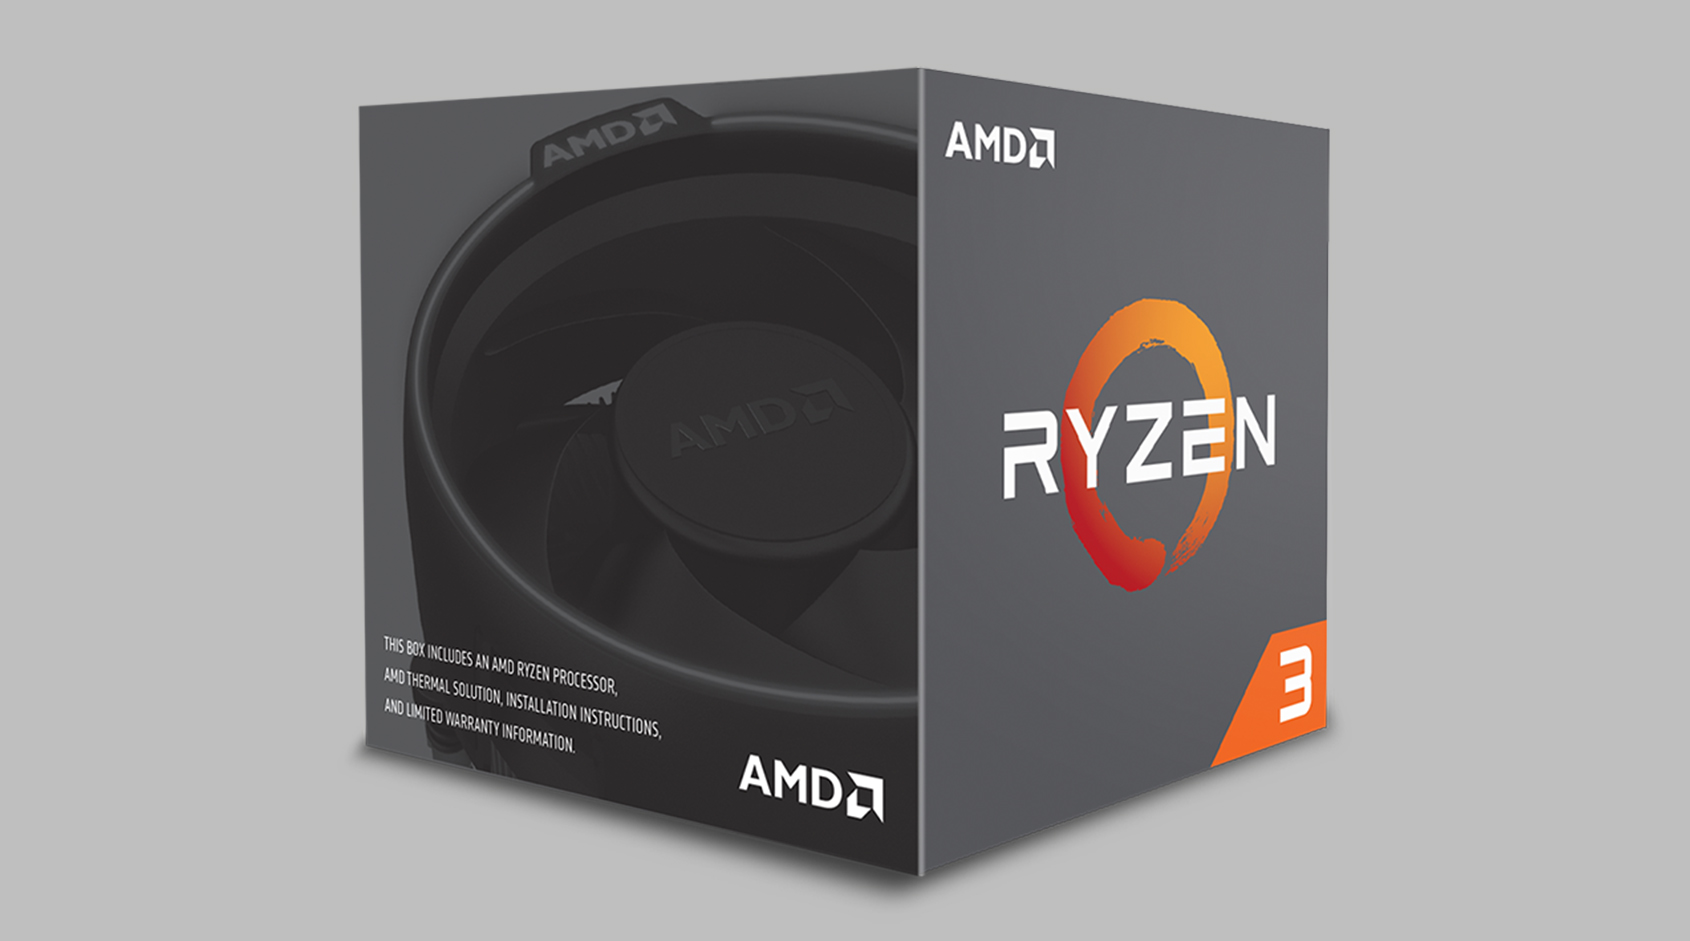 Новое поколение процессоров AMD Ryzen стоит от 99$